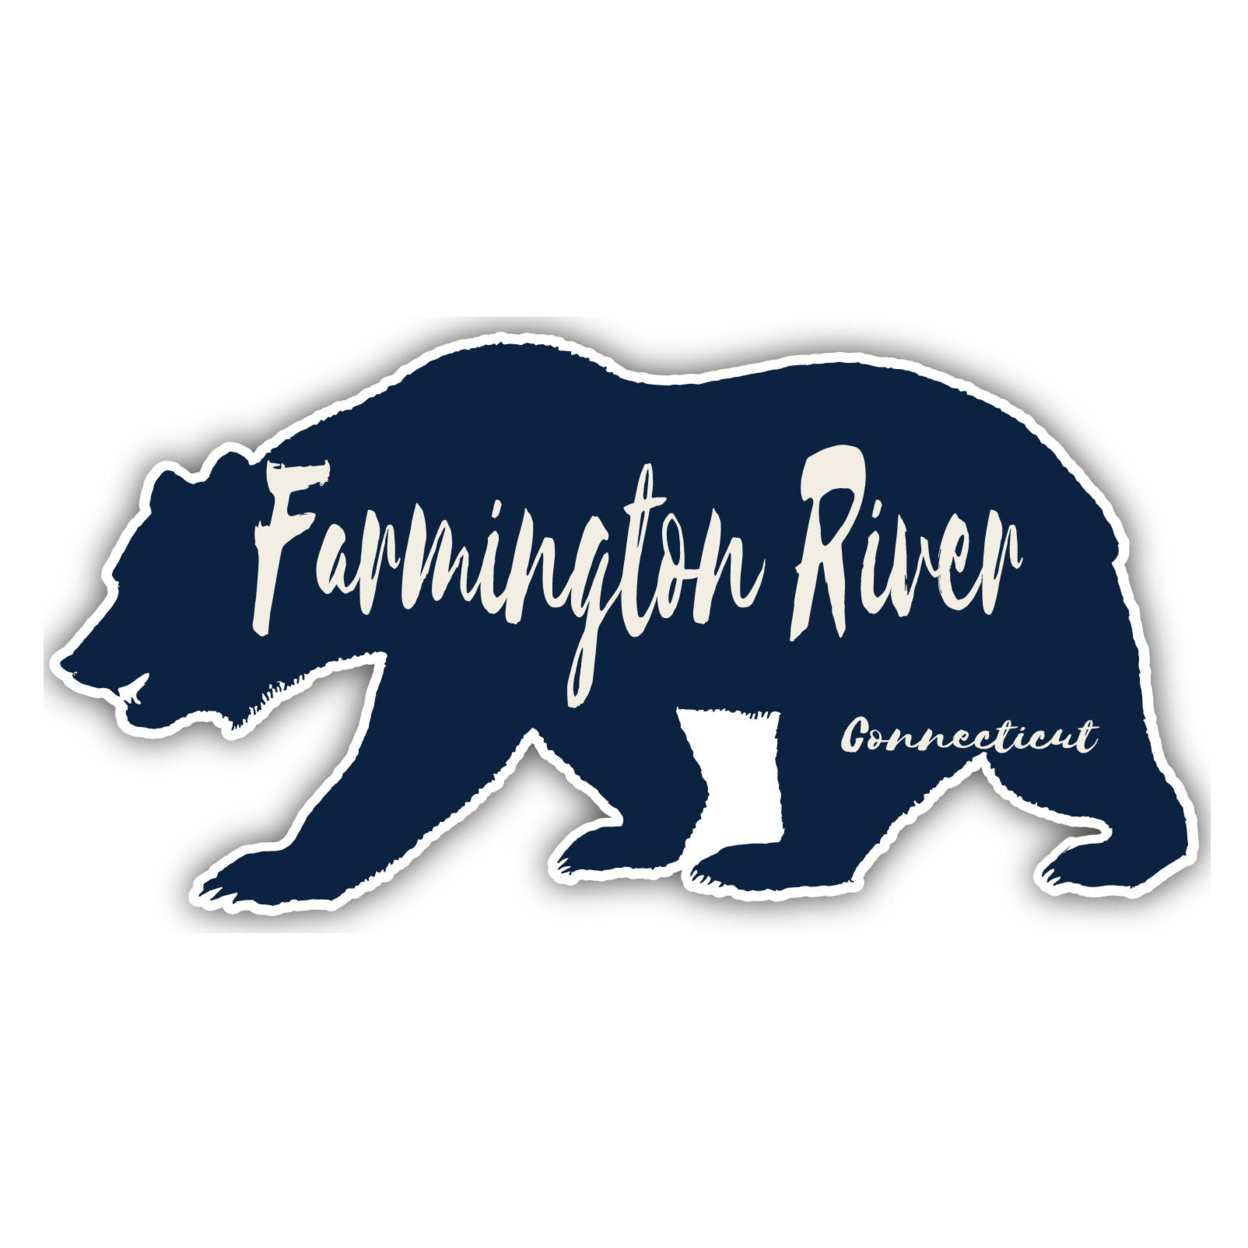 Farmington River Connecticut Souvenir Decorative Stickers (Choose Theme And Size) - Single Unit, 12-Inch, Bear